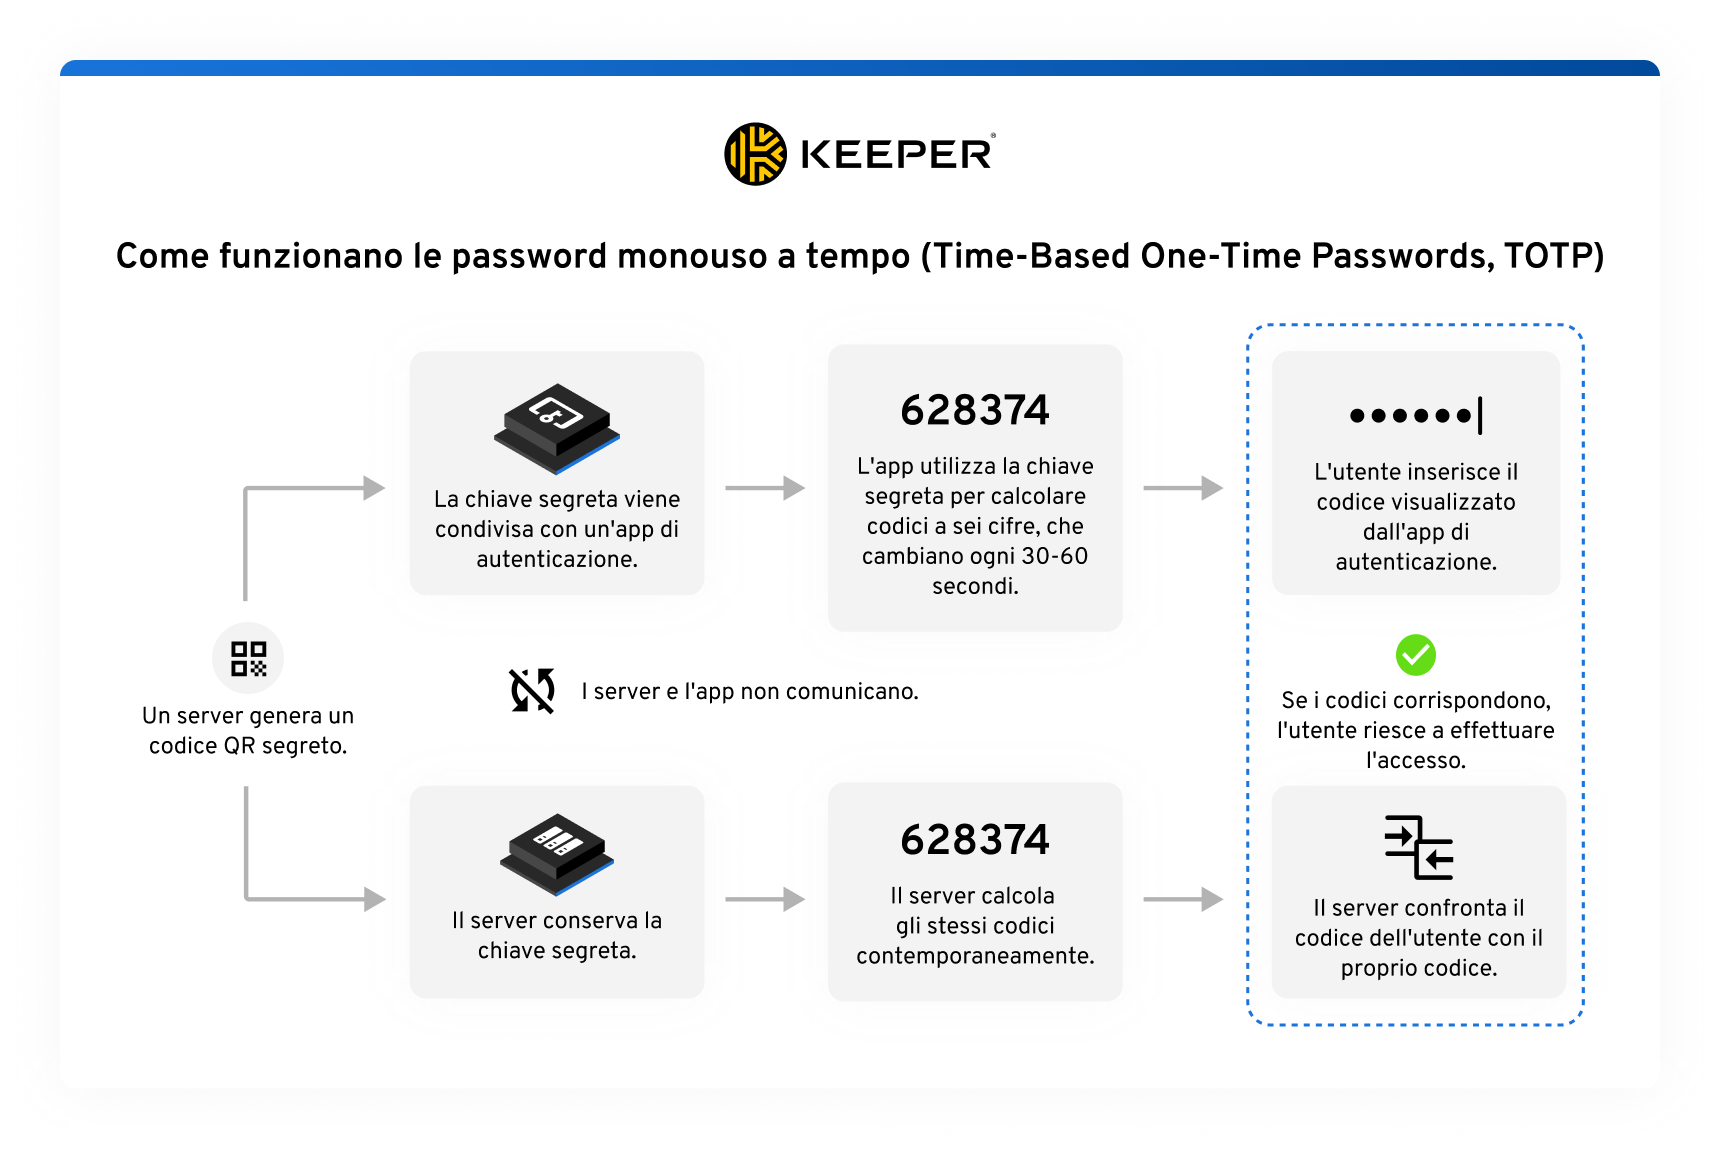 Qui viene illustrato il processo di funzionamento delle password monouso a tempo (TOTP). Include un codice QR generato da un server che visualizza un codice temporaneo, un'app di autenticazione con cui viene condivisa la chiave segreta, un codice a sei cifre generato dall'app e un simbolo per trasmettere l'idea di autenticazione avanzata.